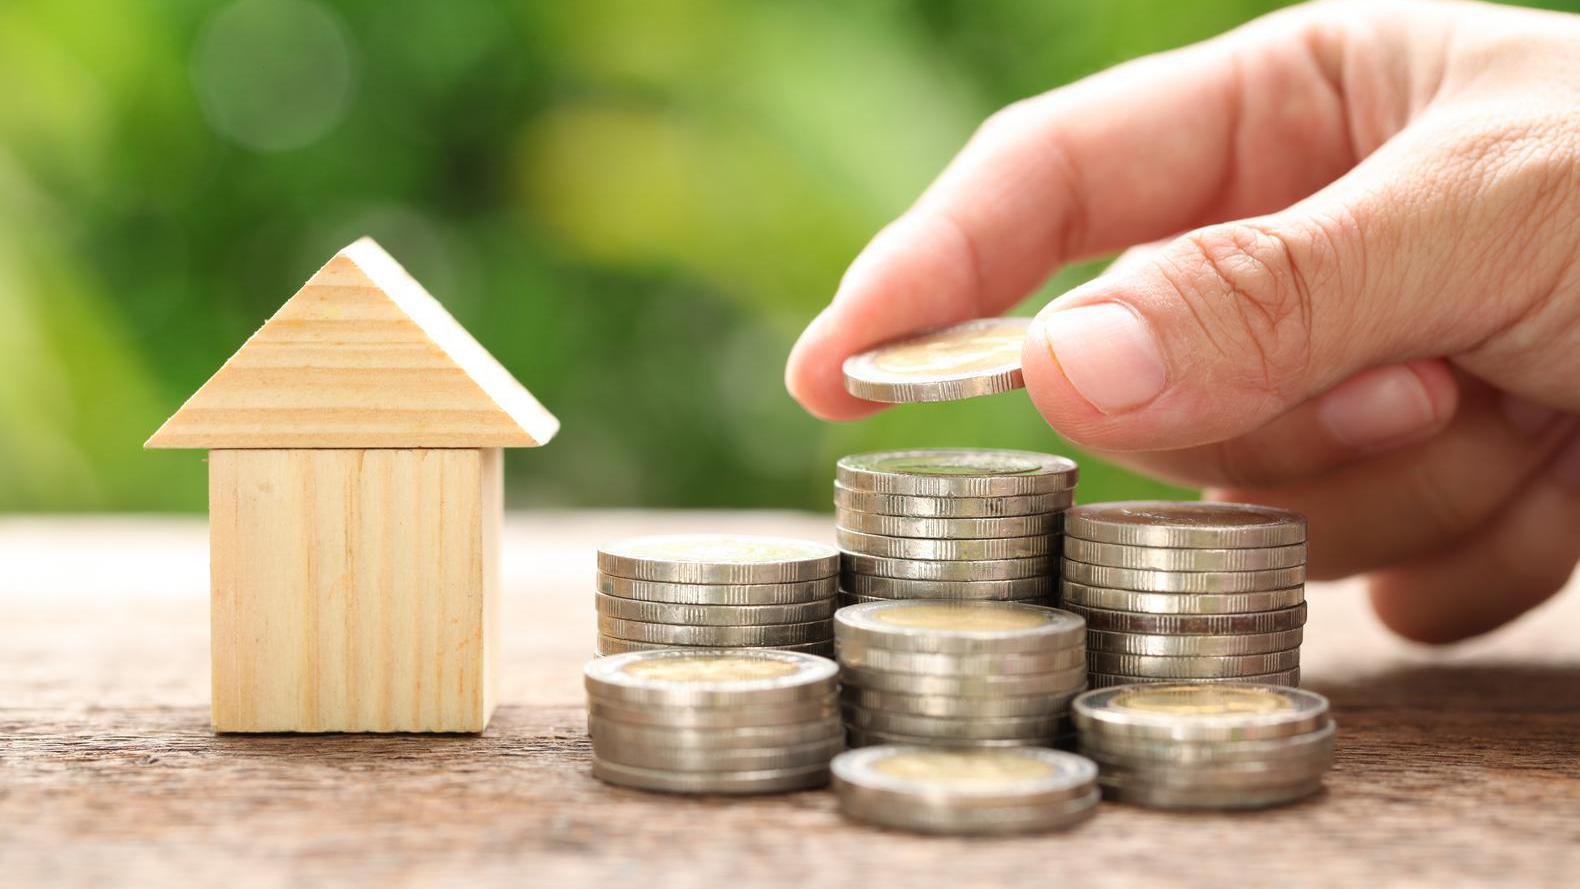 Tijdelijk mogelijk: hypotheek verhogen zonder advies